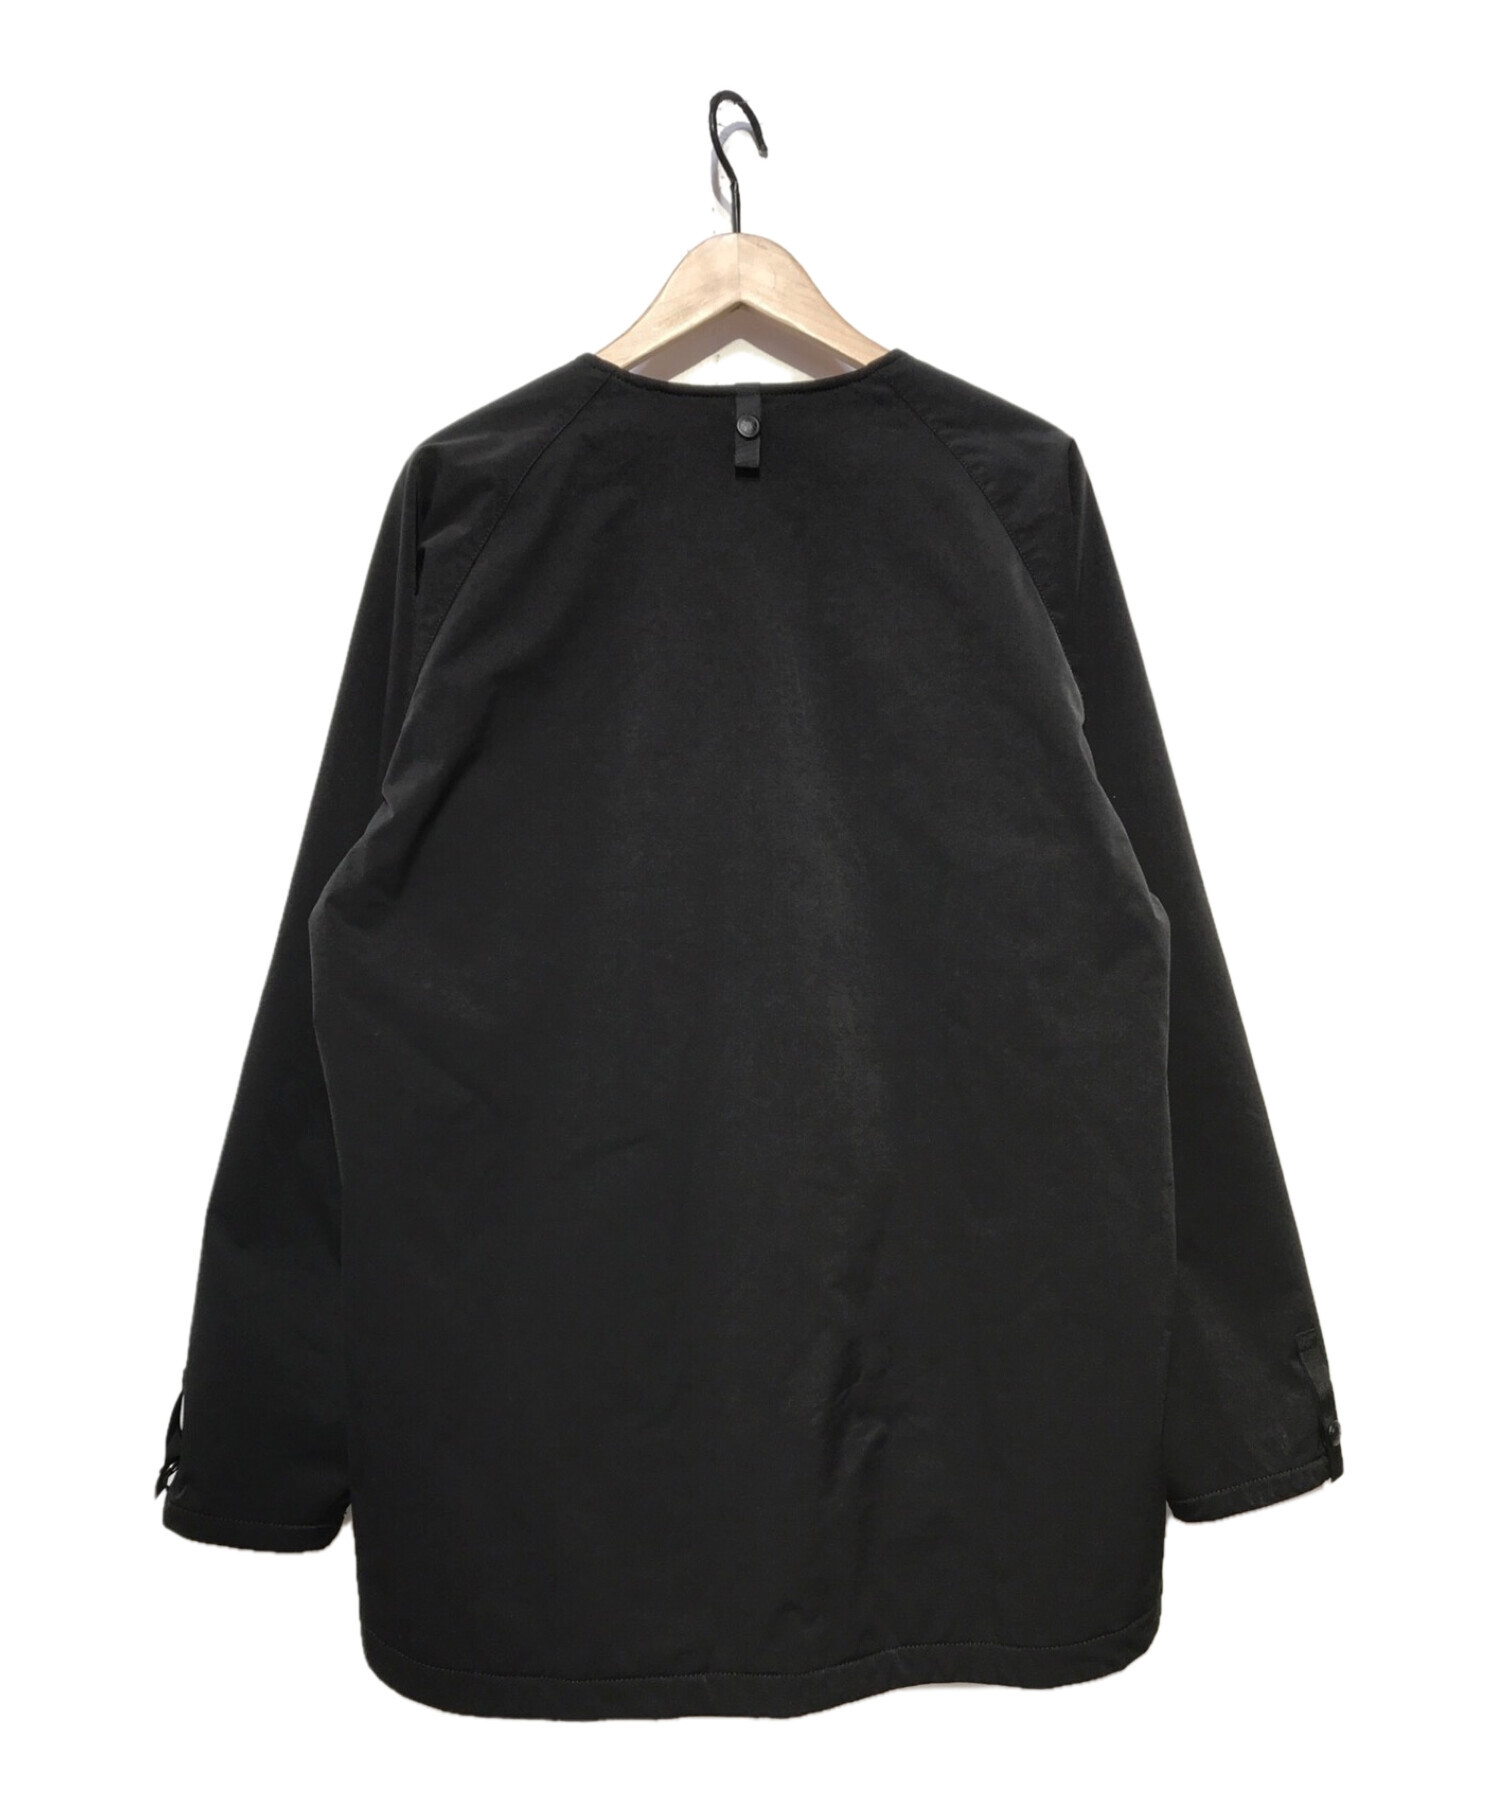 mout recon tailor (マウトリーコンテーラー) ジャケット/シューティングハードシェルジャケット ブラック サイズ:48